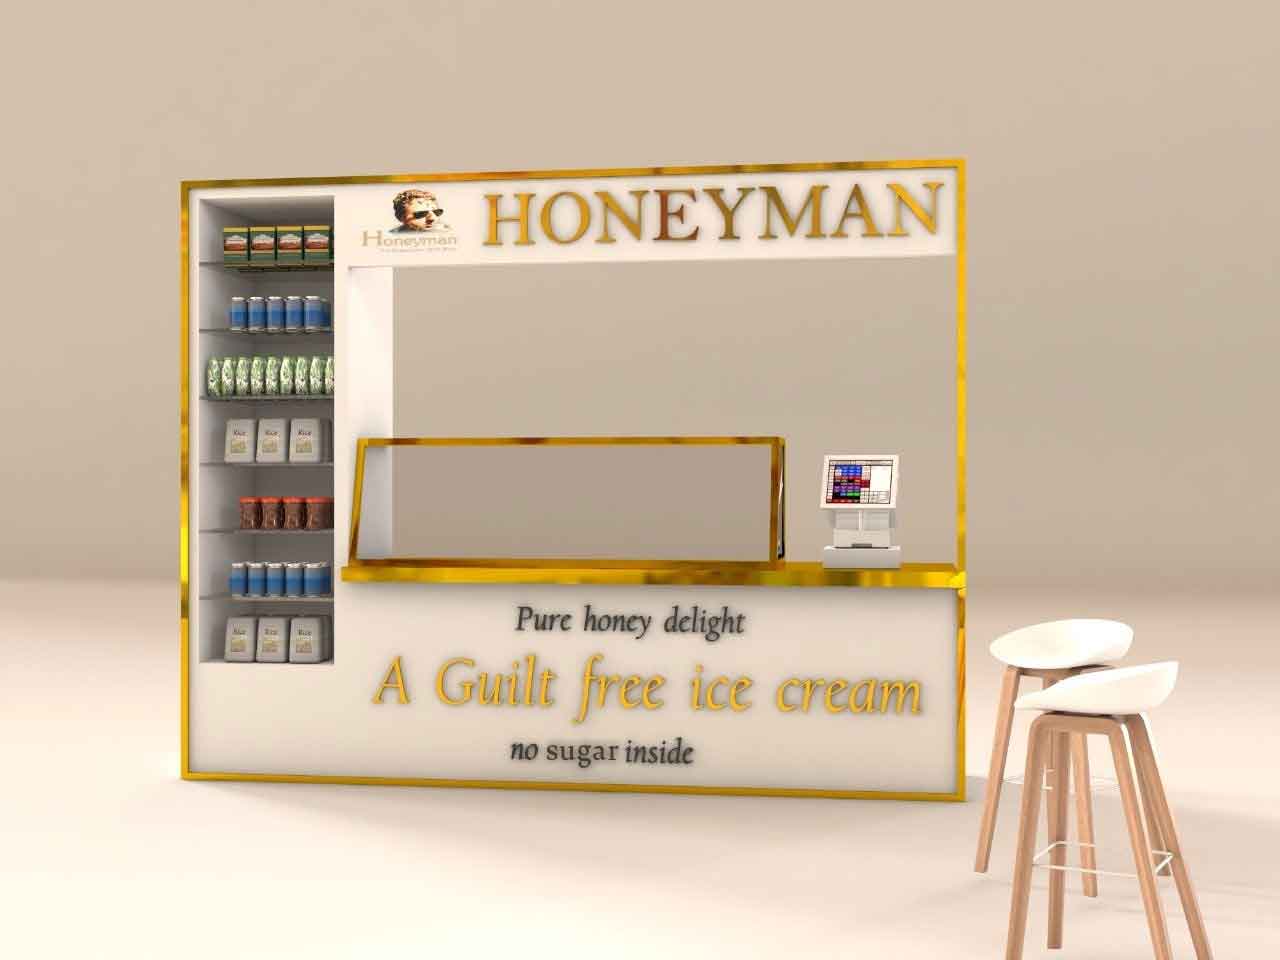 Honeyman Franchise Image